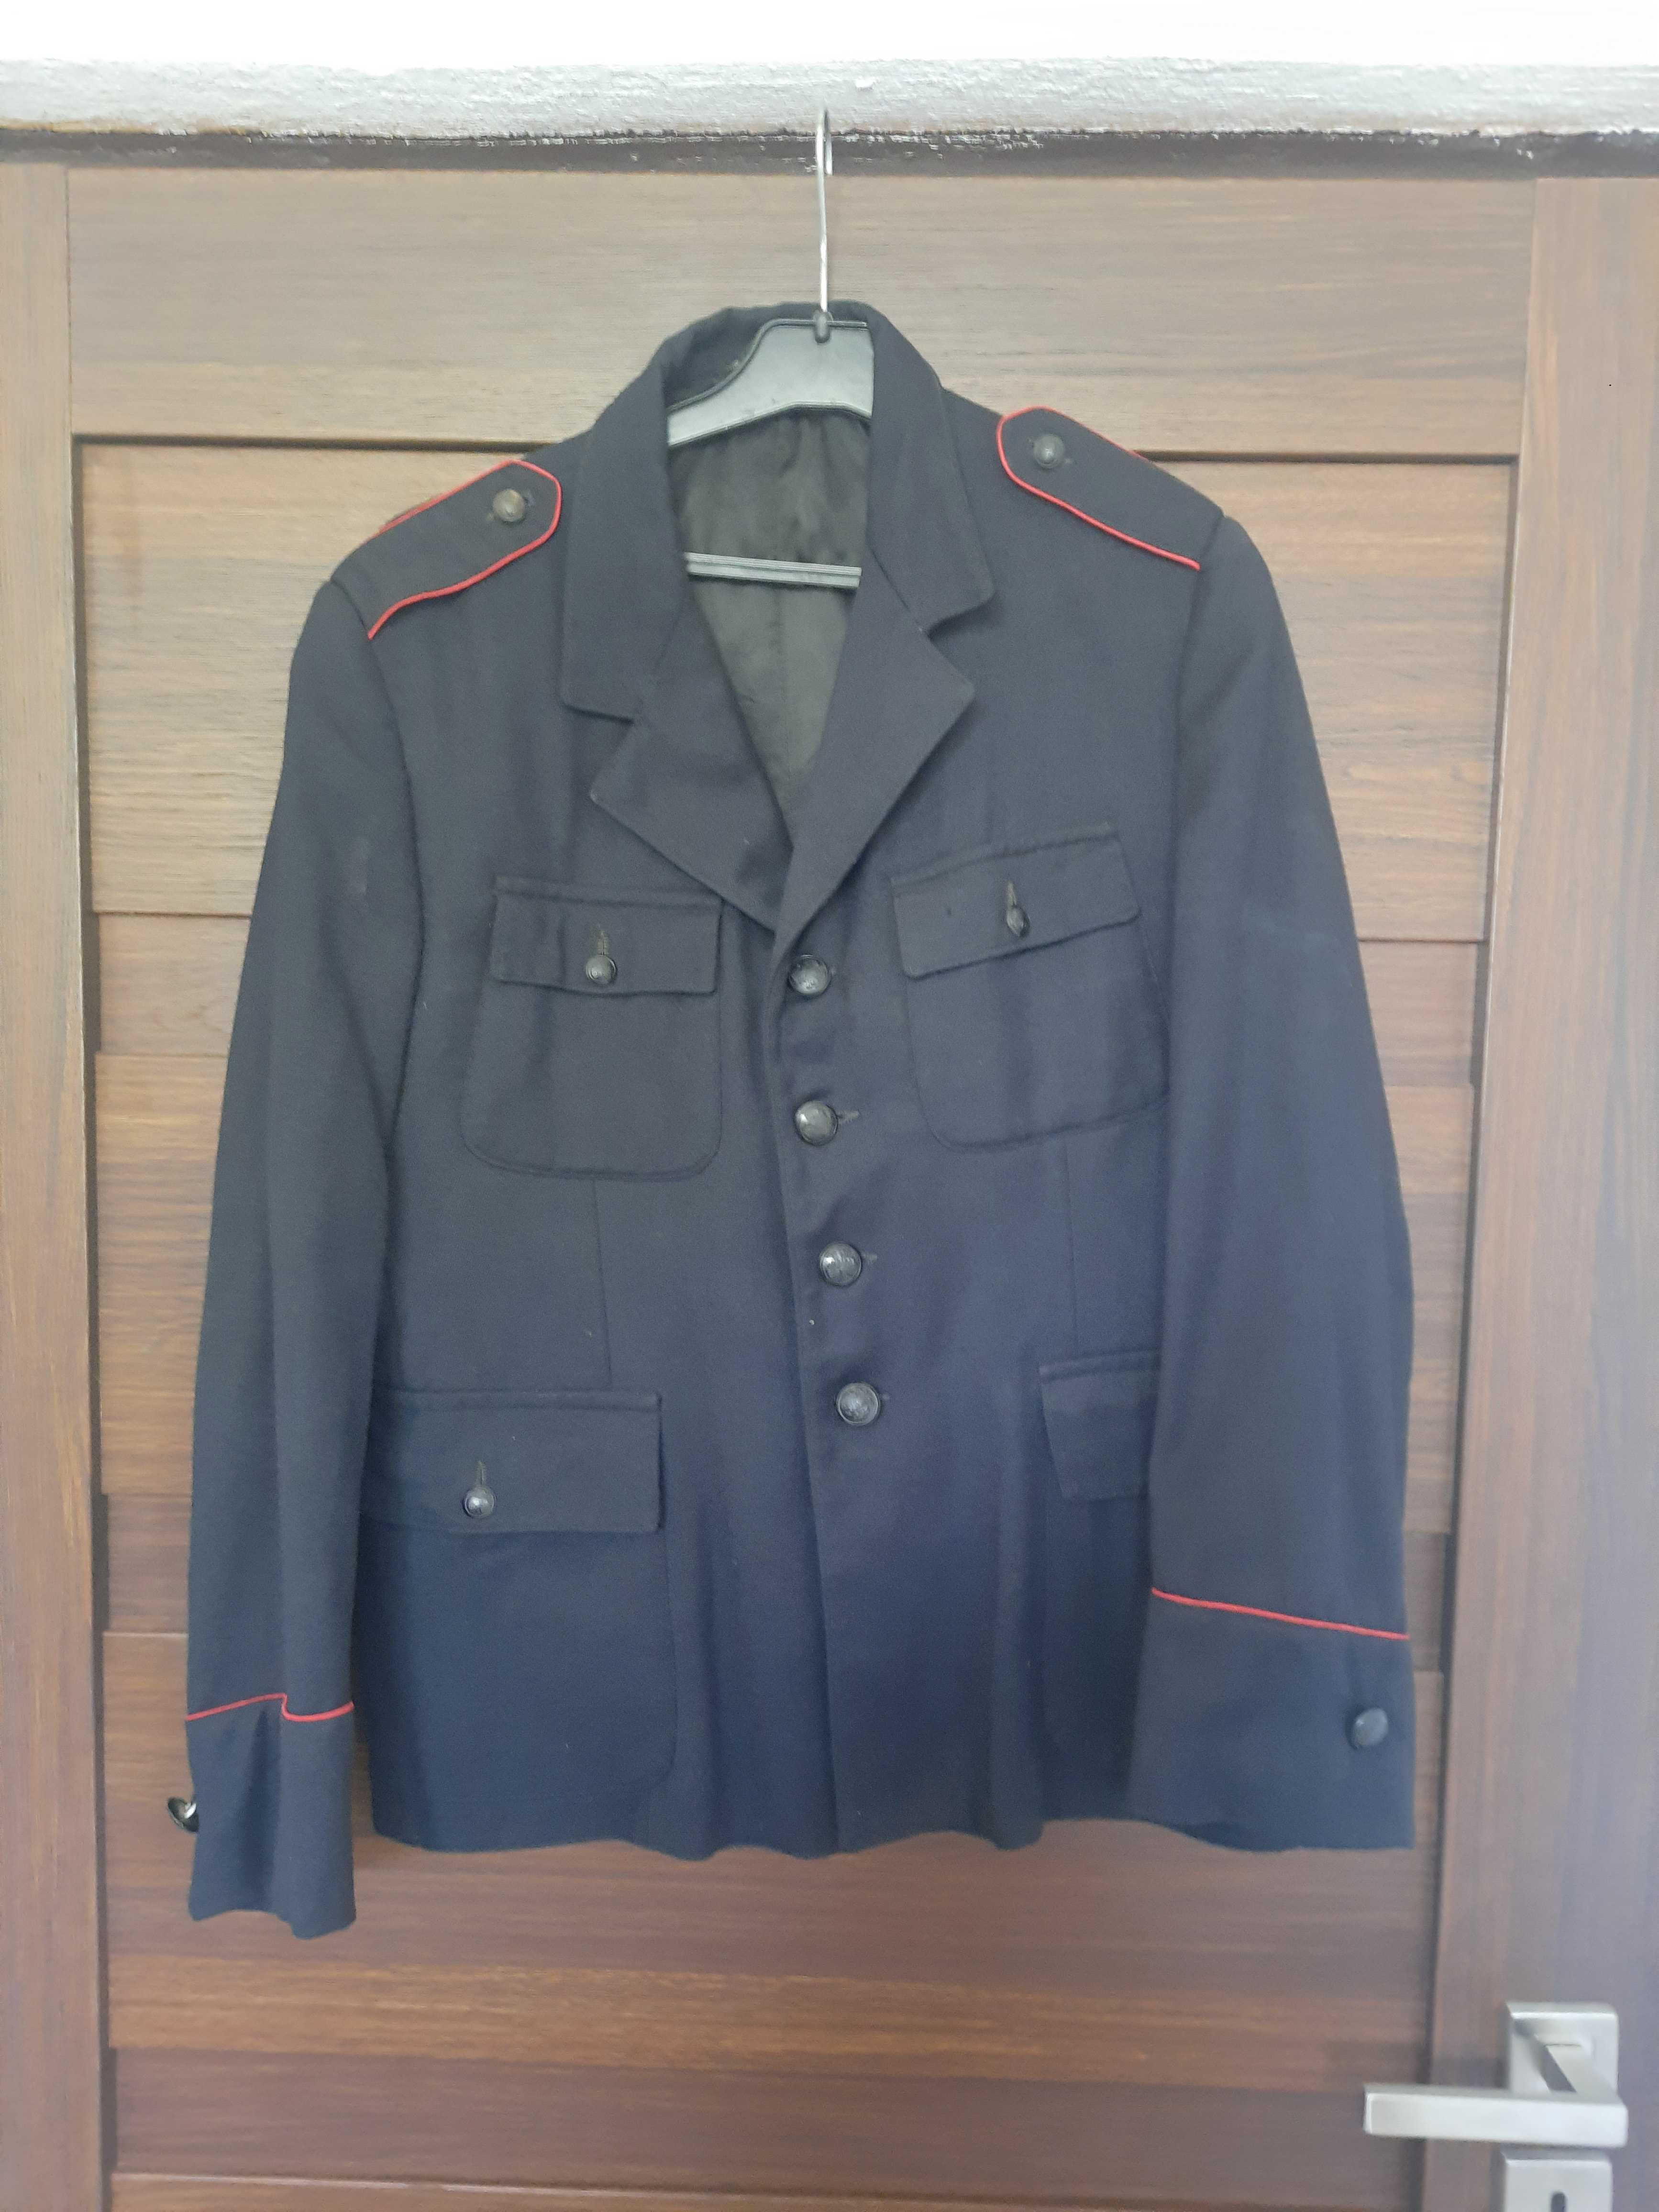 Zabytkowy mundur strażacki z okresu PRL